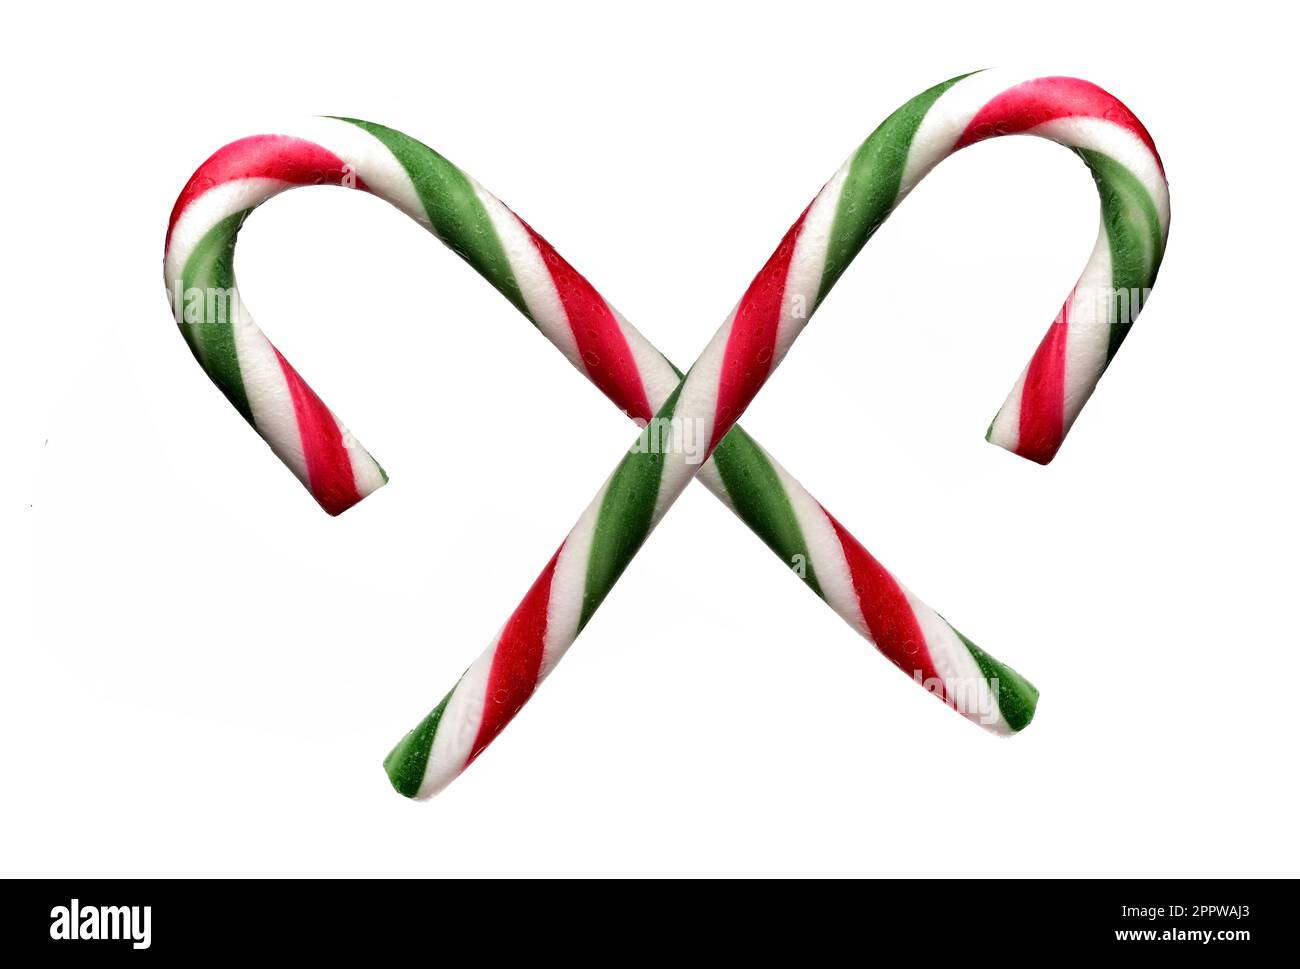 Due anteriori incrociati piegati colorato verde rosso bianco glassa zucchero barrette caramelle bastoni su sfondo bianco concetto per ricco di zucchero cibo Natale e swe Foto Stock